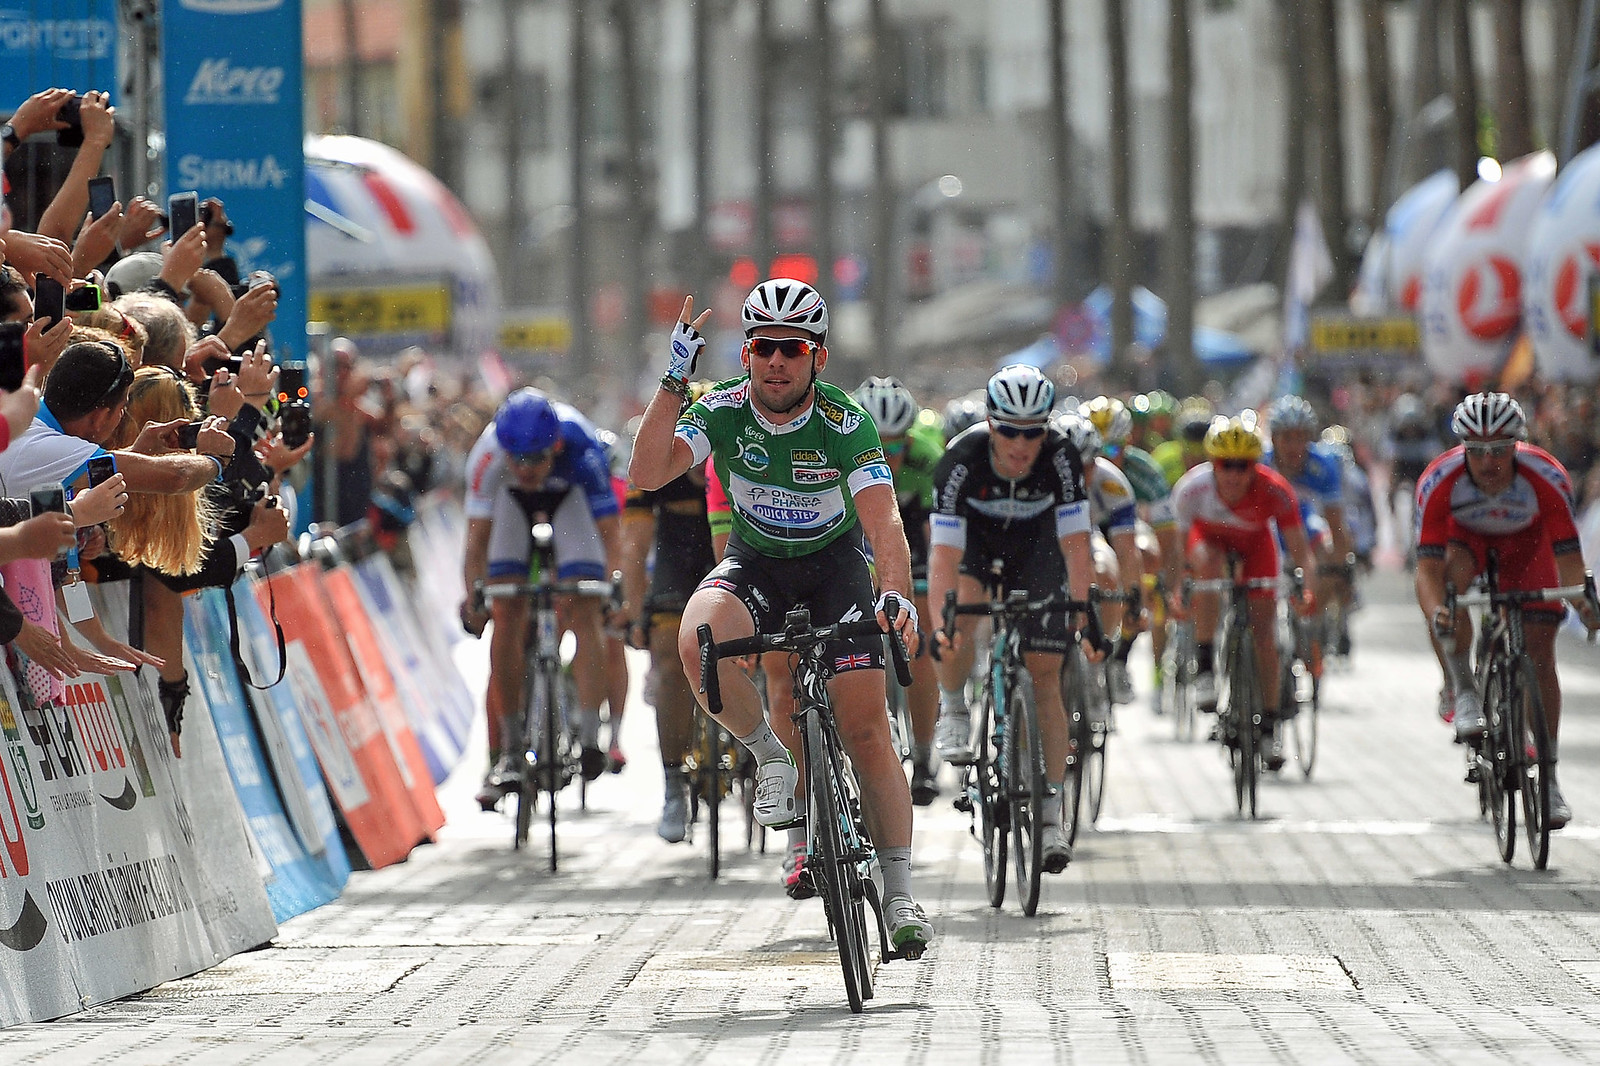 TUR Stage 4. Cavendish wins